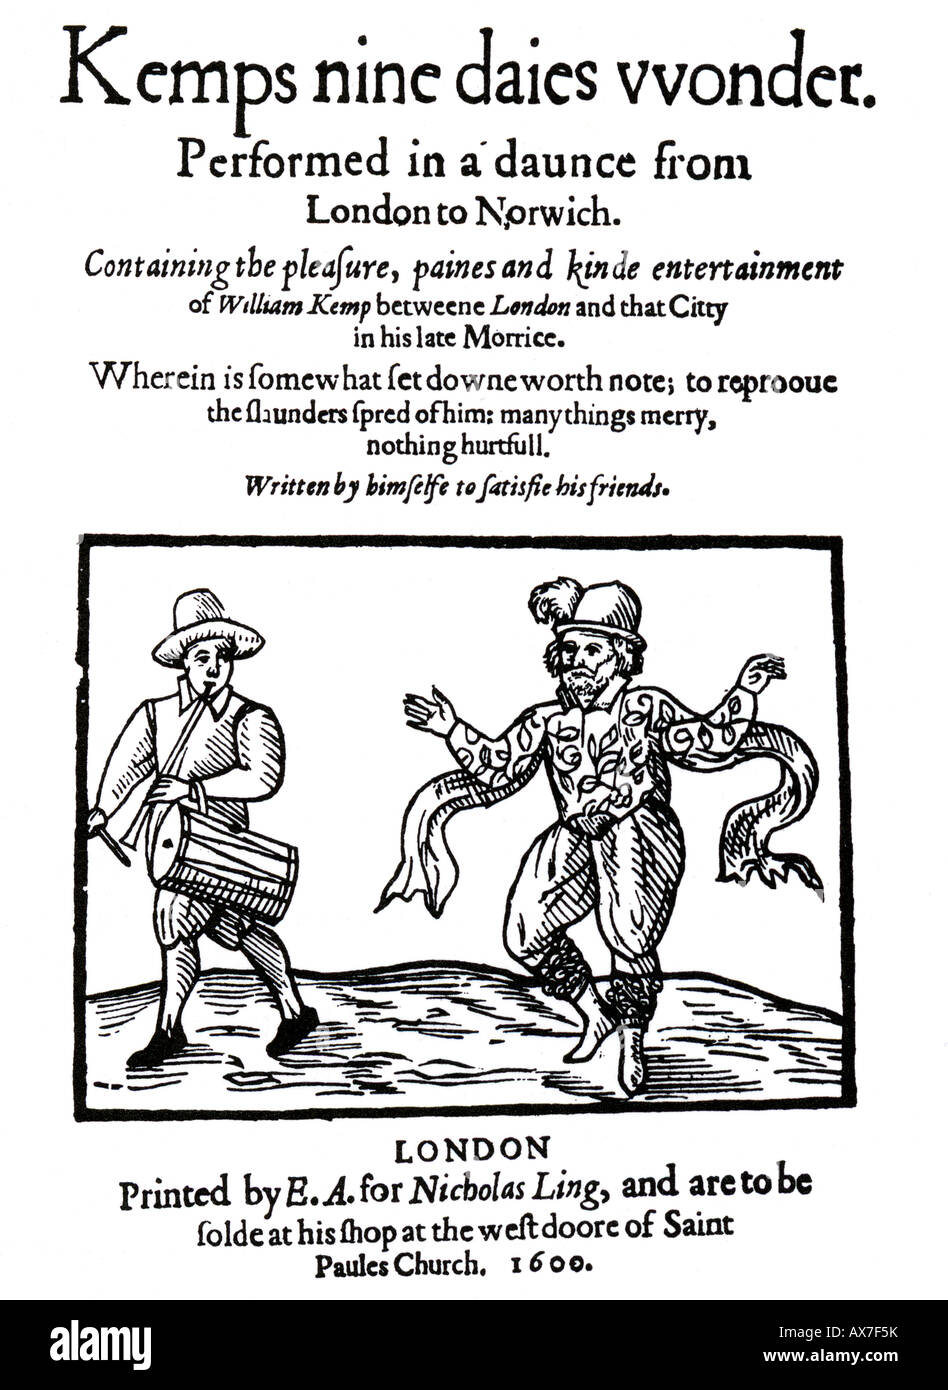 KEMPS NEUF DAIES WONDER publié en 1600 l'enregistrement comment William Kemp Morris dansait de Norwich à Londres - voir description Banque D'Images